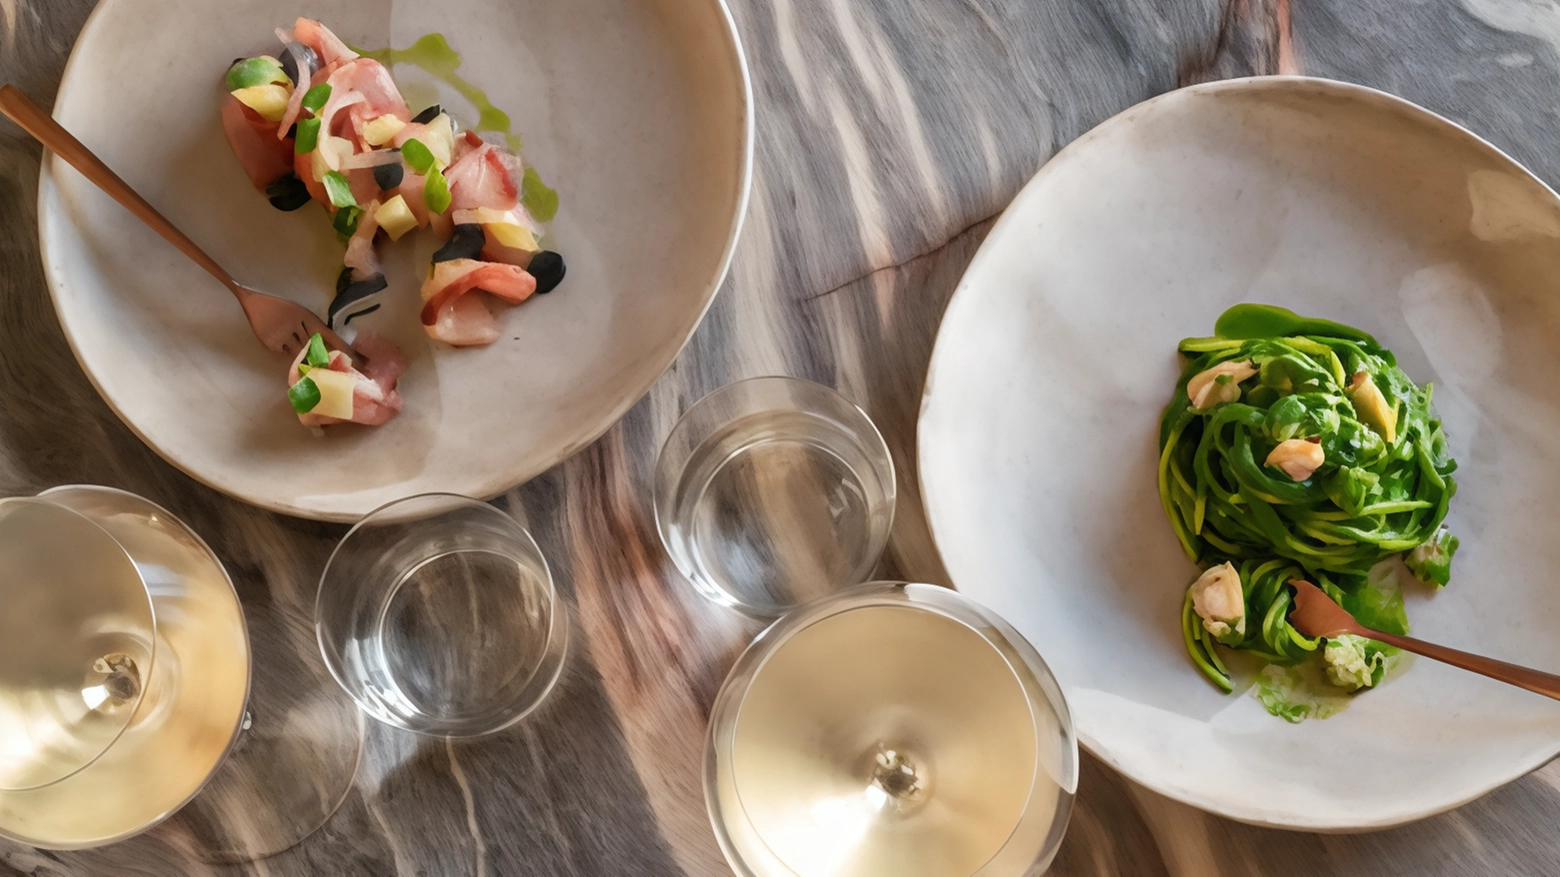 Prte del progetto 'Riviera', offre una cucina raffinata e creativa, con piatti che omaggiano la tradizione italiana e Mediterranea. La location incantevole e l'ampia selezione di vini completano l'esperienza gastronomica